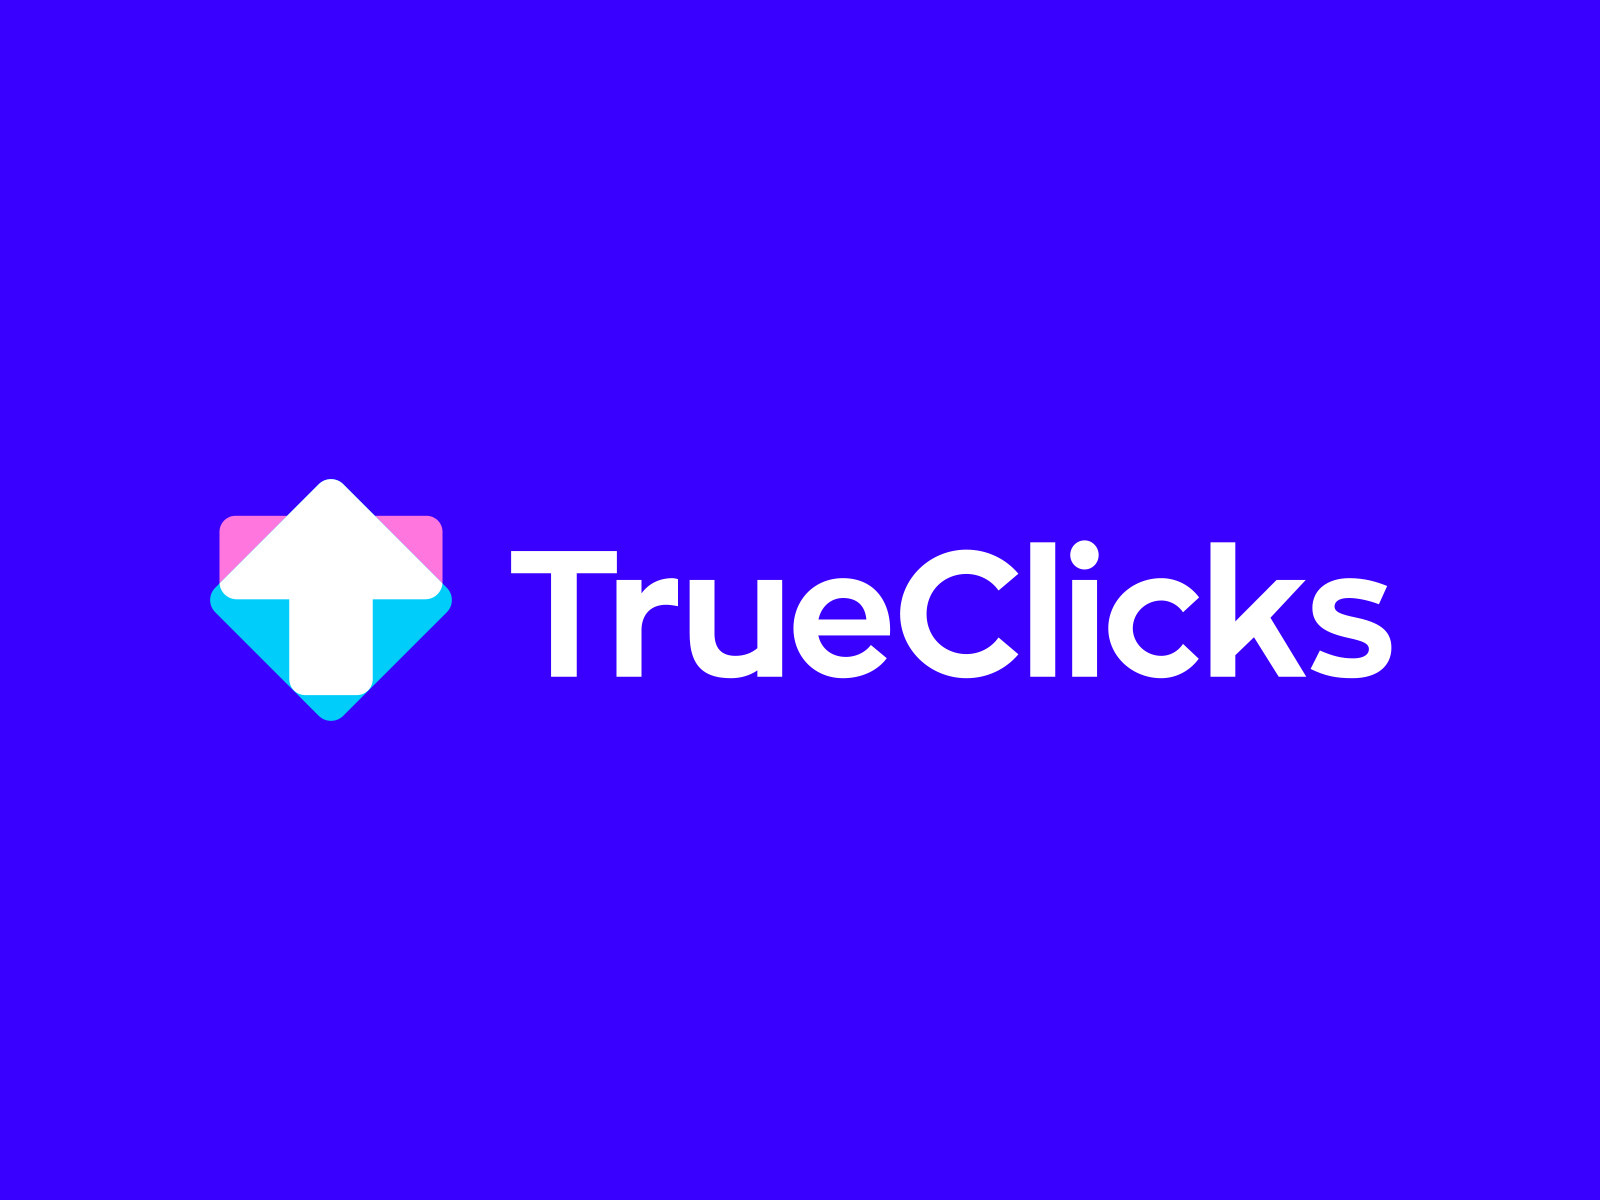 TrueClicks logo animation